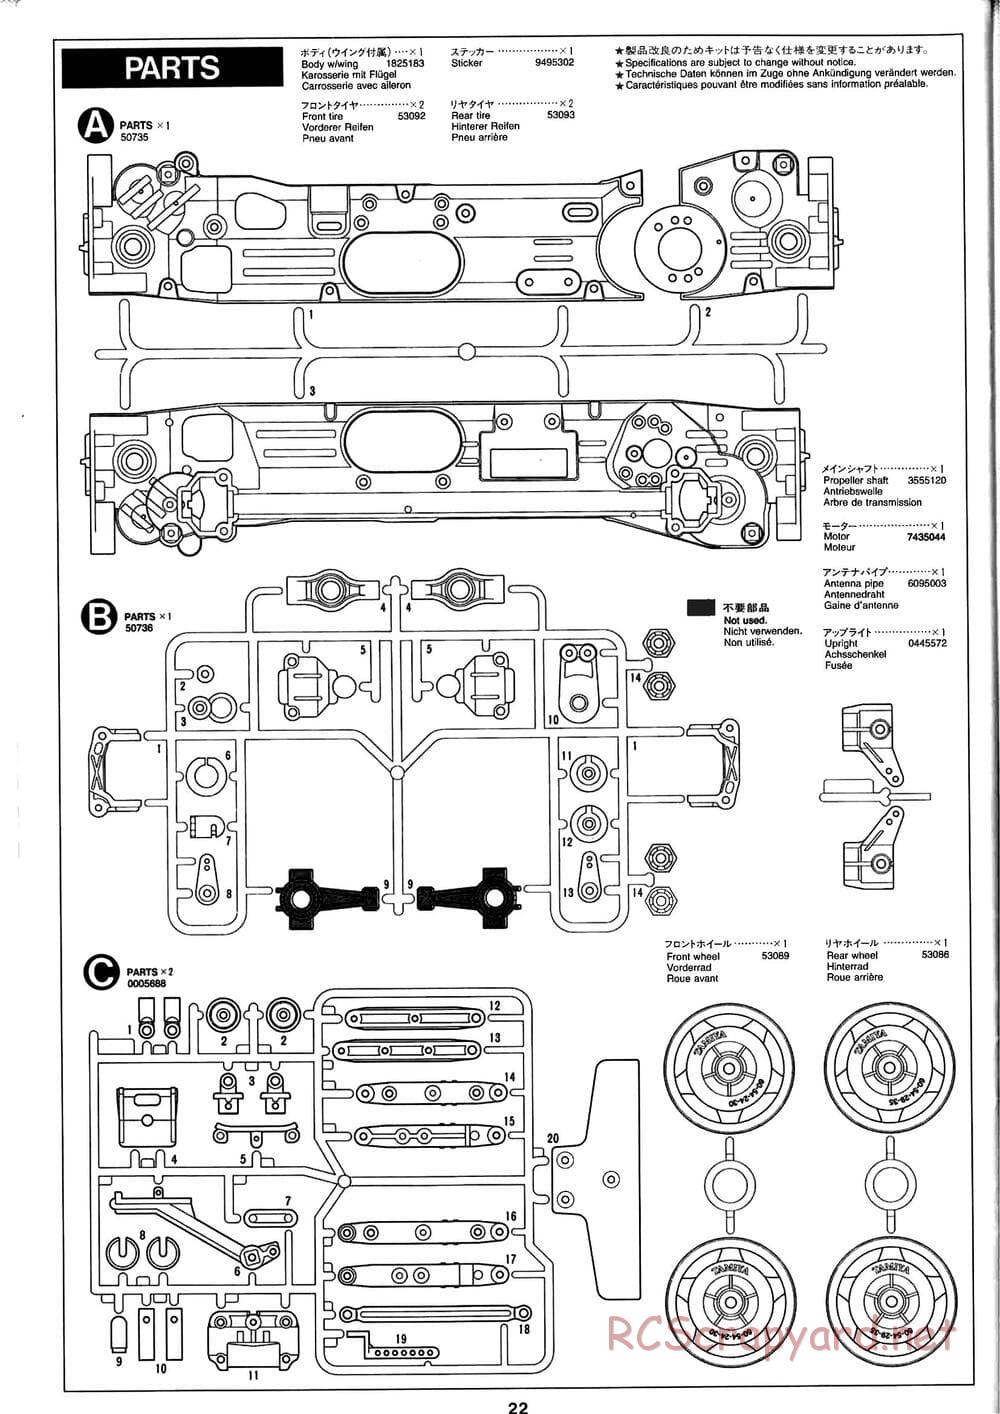 Tamiya - Baja Champ - TL-01B Chassis - Manual - Page 22